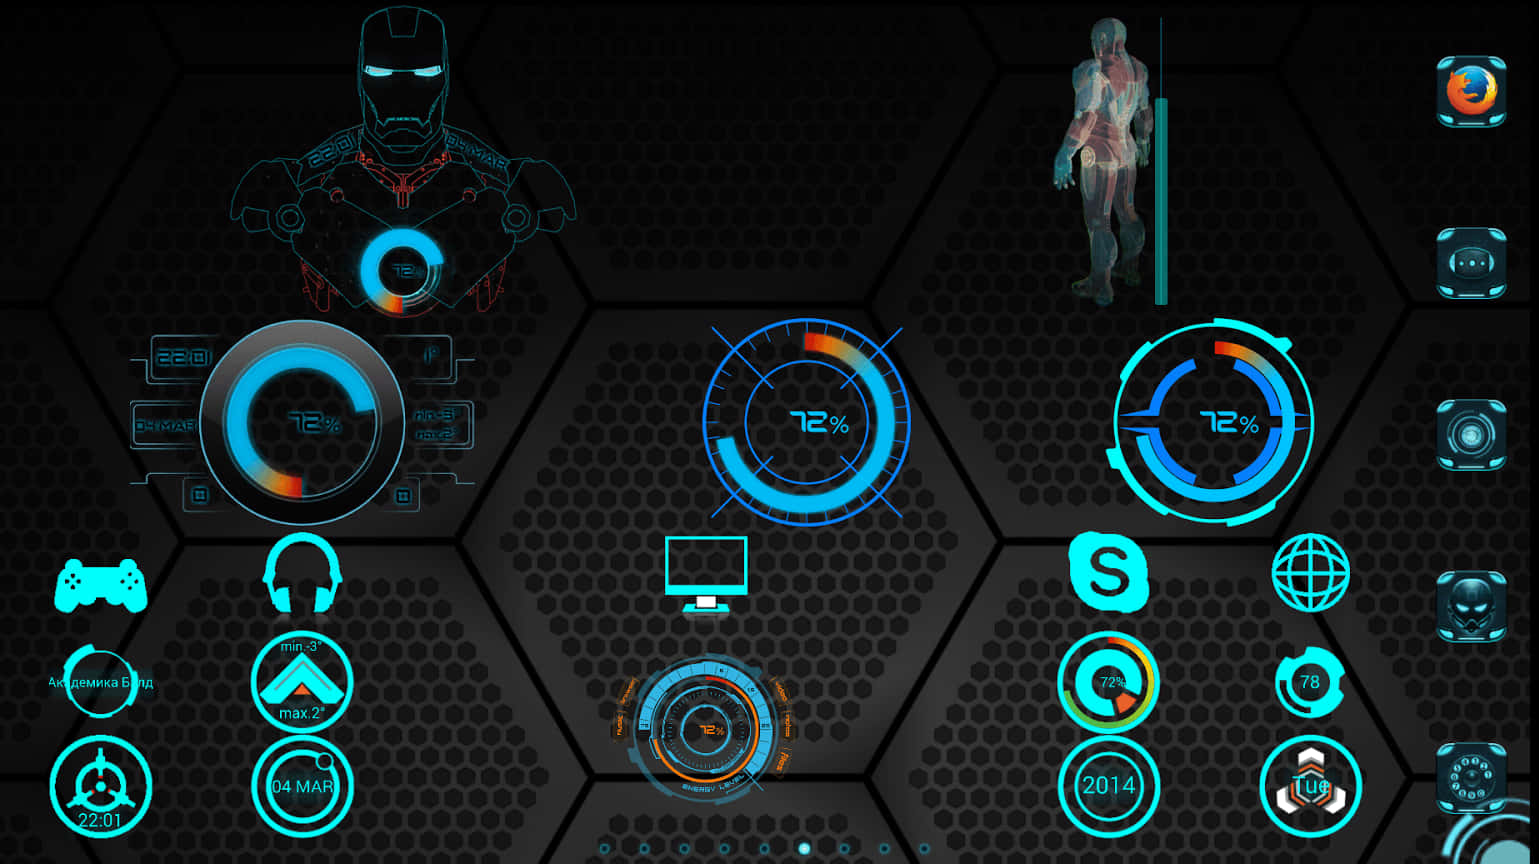 Betreteeine Futuristische Welt - Iron Man Jarvis Desktop. Wallpaper